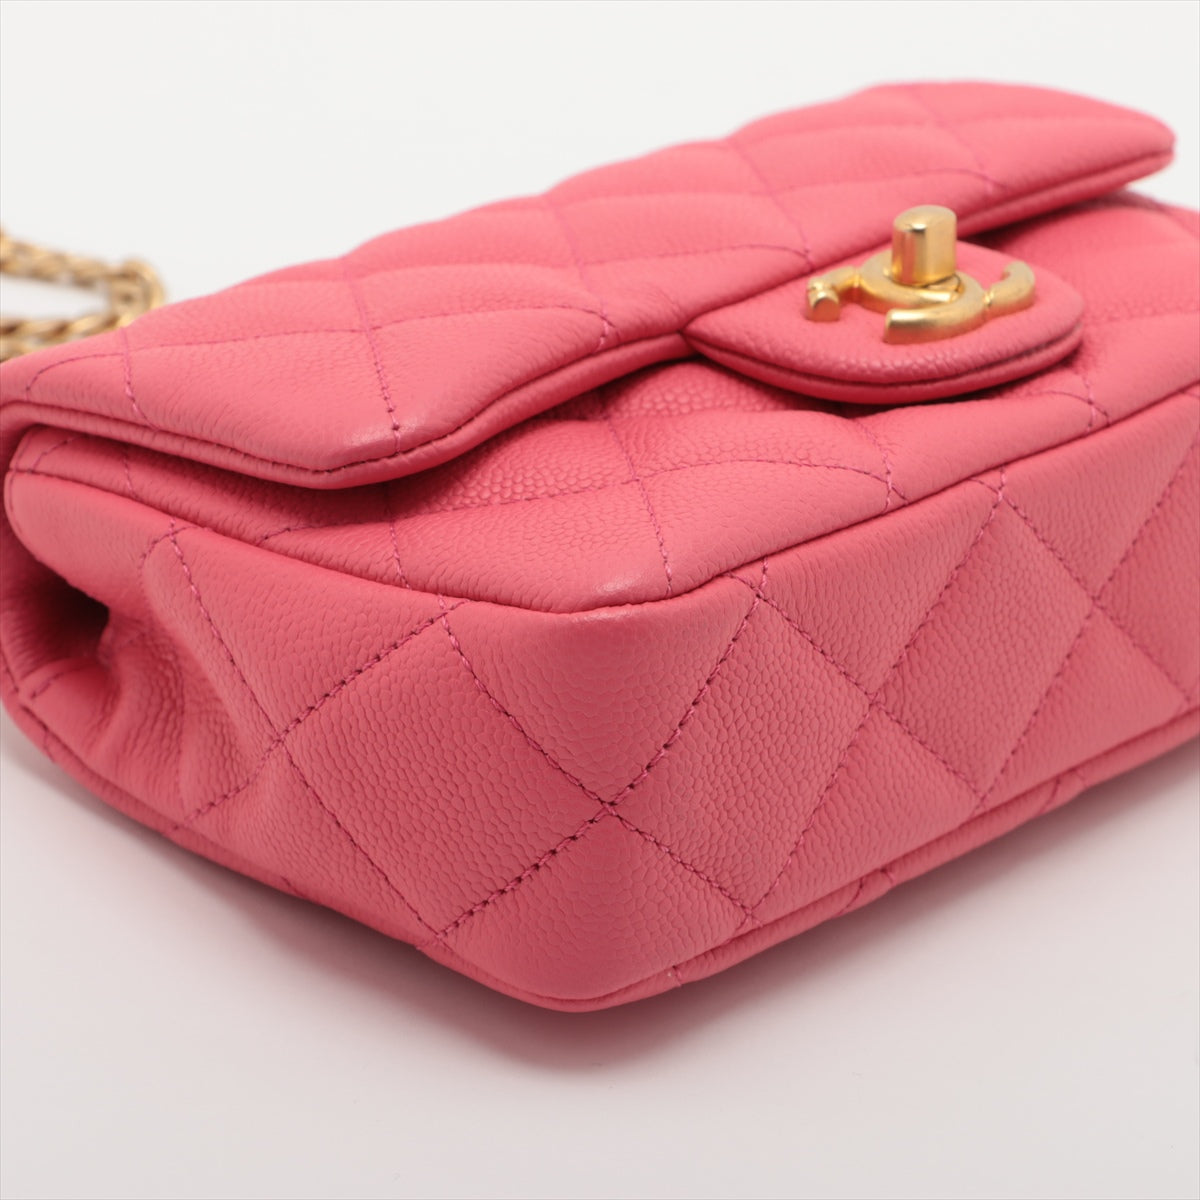 Chanel Mini Matelasse Caviar Skin Chain Shoulder Bag heart metal fittings Pink Gold Metal Fittings